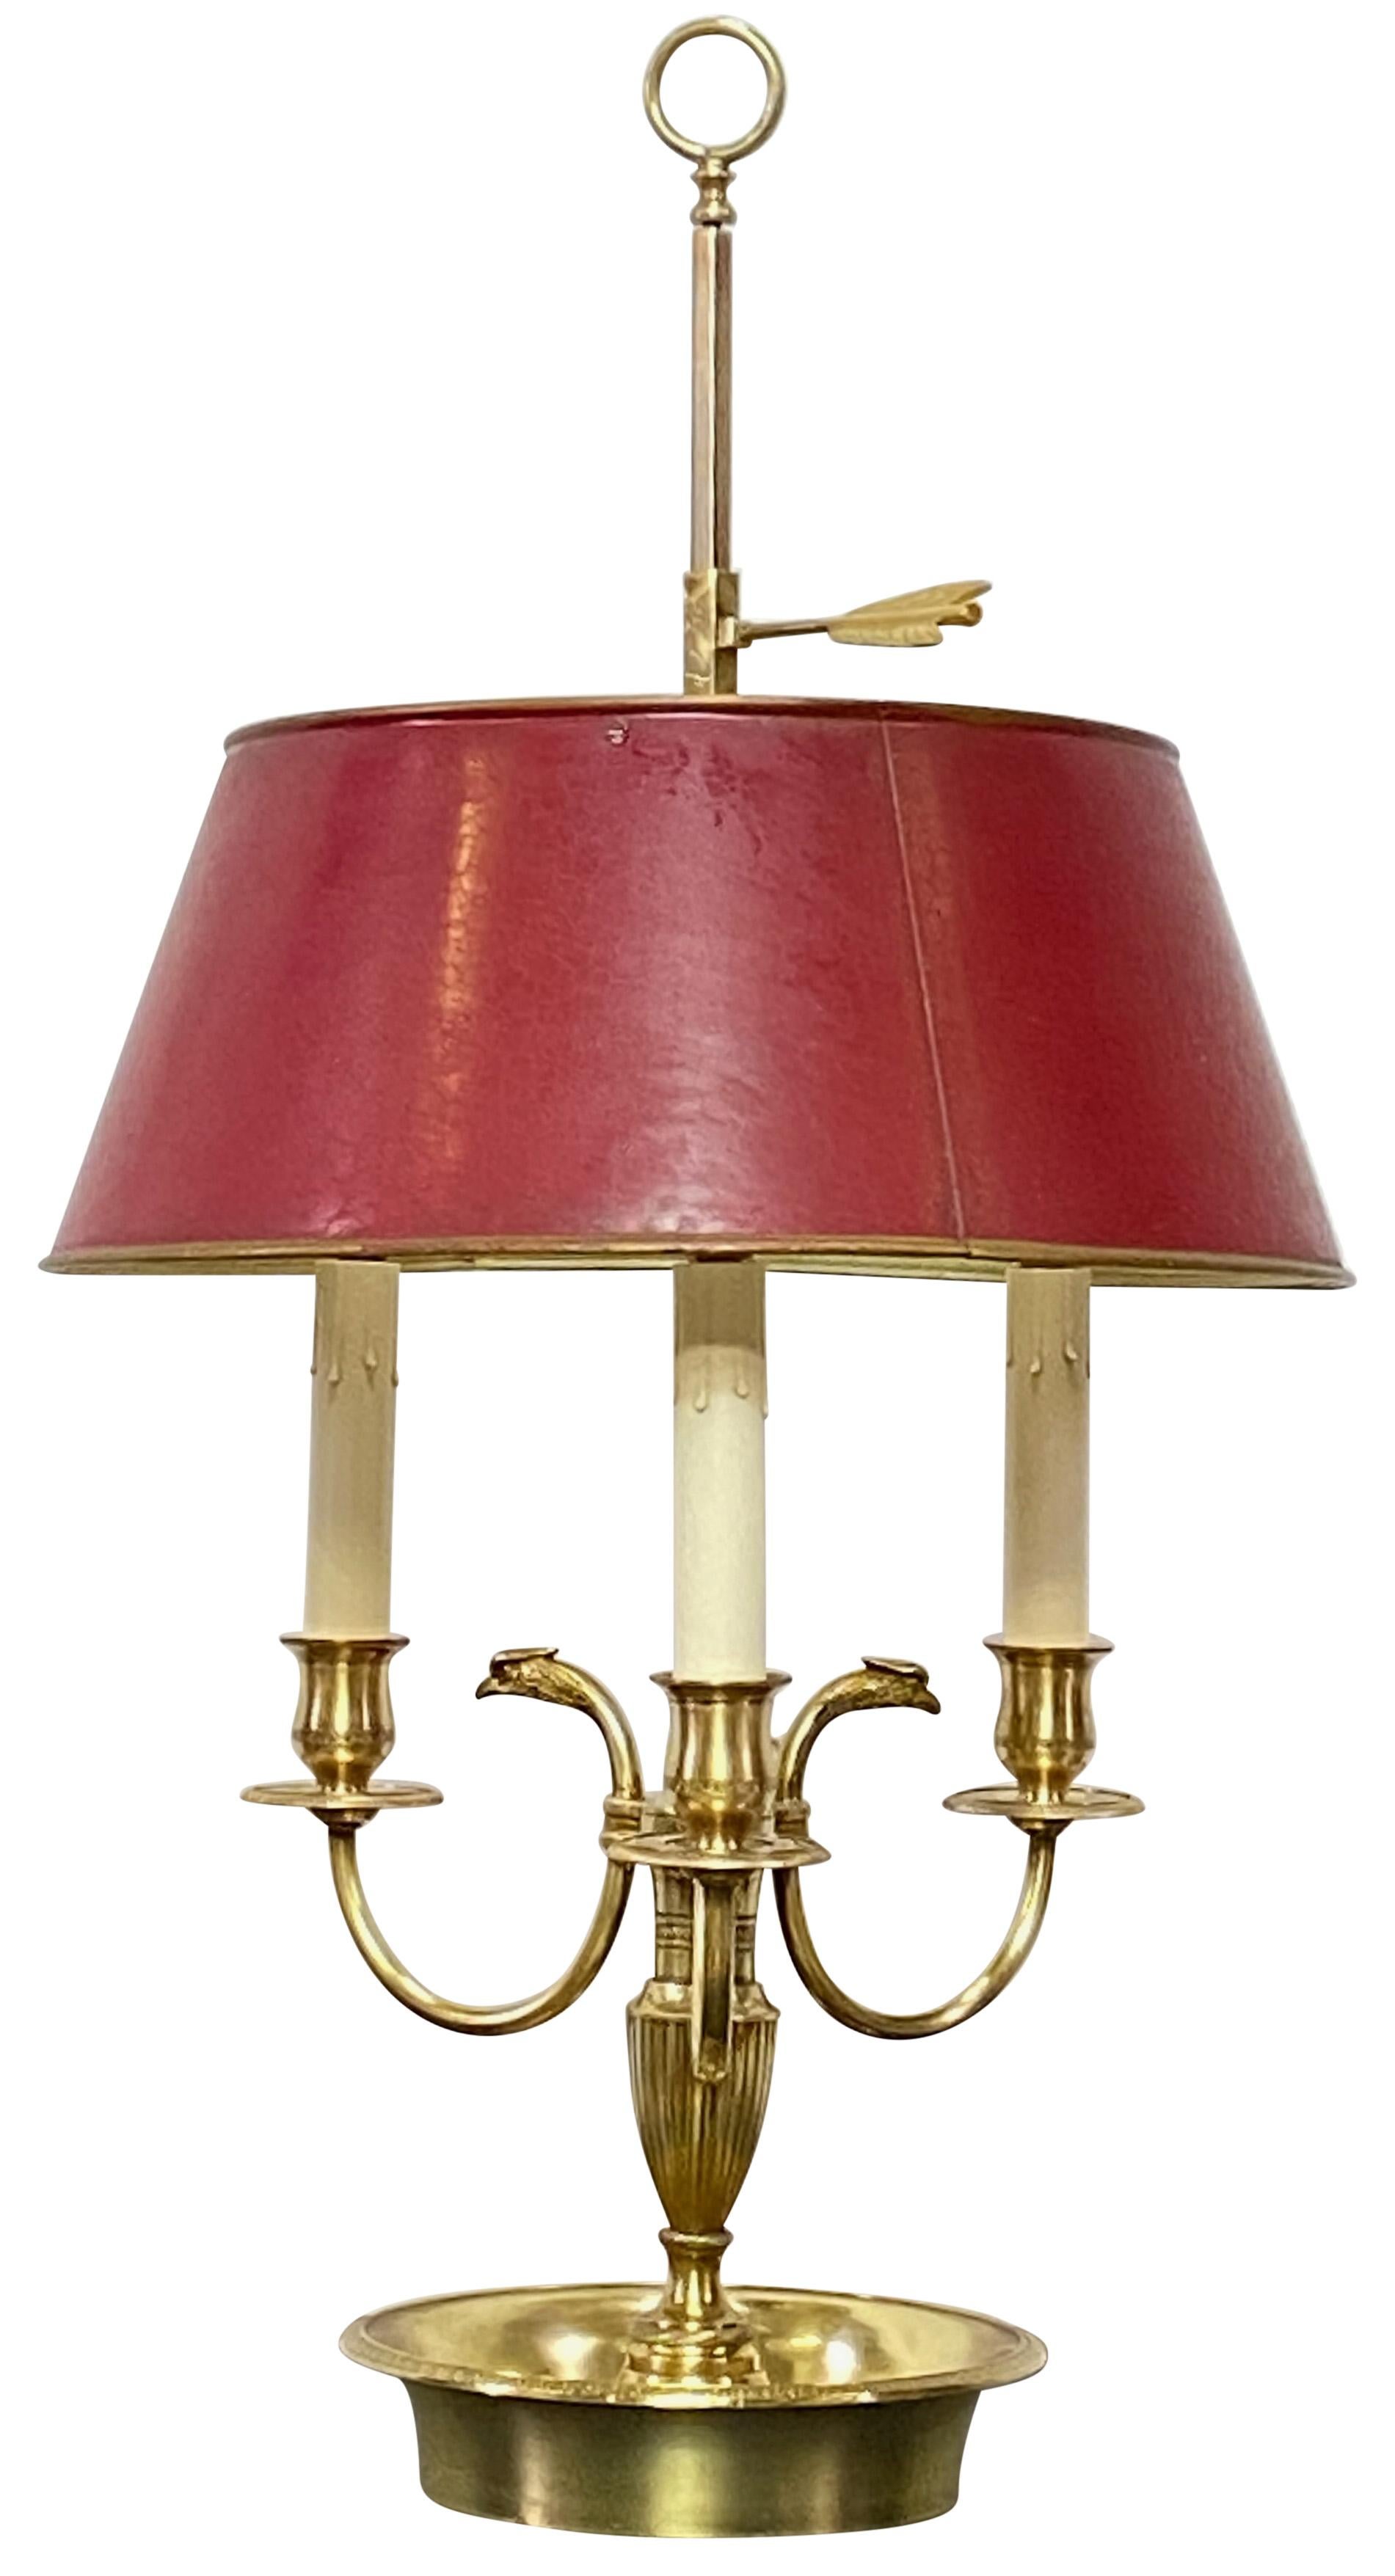 Eine ausgezeichnete Qualität des frühen 19. Jahrhunderts Französisch Stil (in den frühen 20. Jahrhundert hergestellt) Messing Bouillotte Tischlampe mit original roten tole gemalt Schatten.
Kürzlich überholt und neu verkabelt in ausgezeichnetem